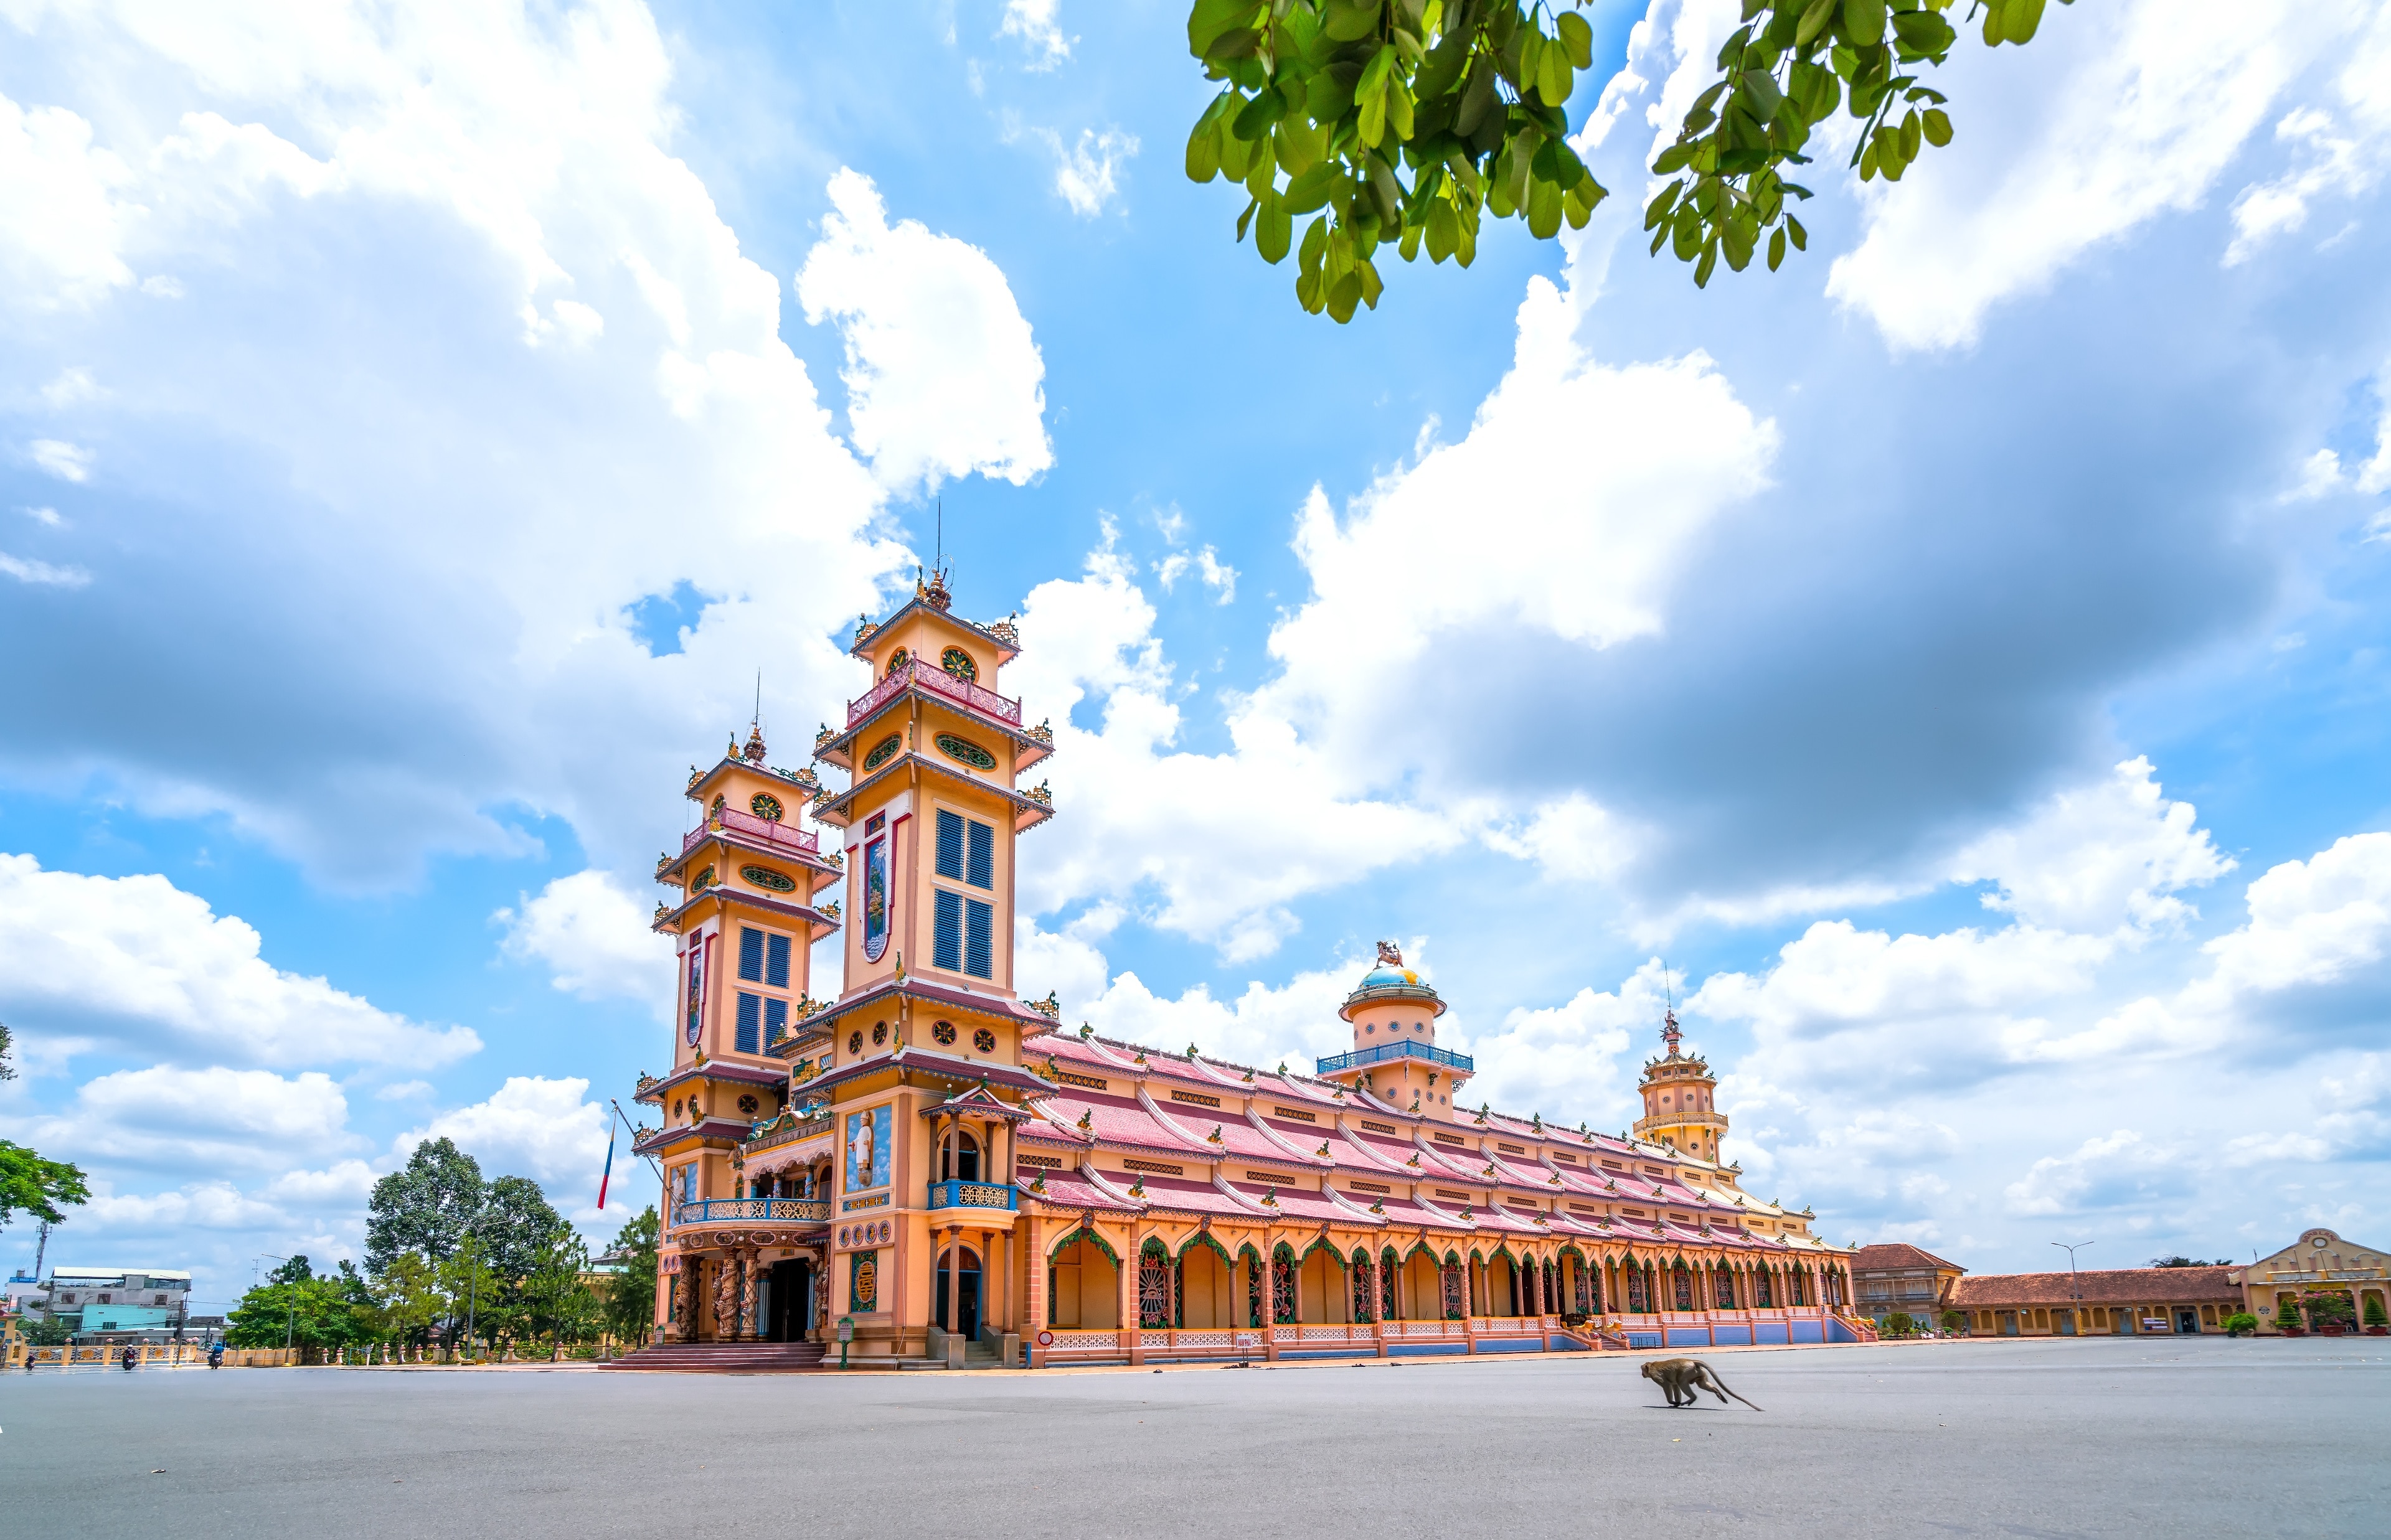 Visite Tay Ninh: o melhor de Tay Ninh, Tay Ninh - Viagens 2022 ...